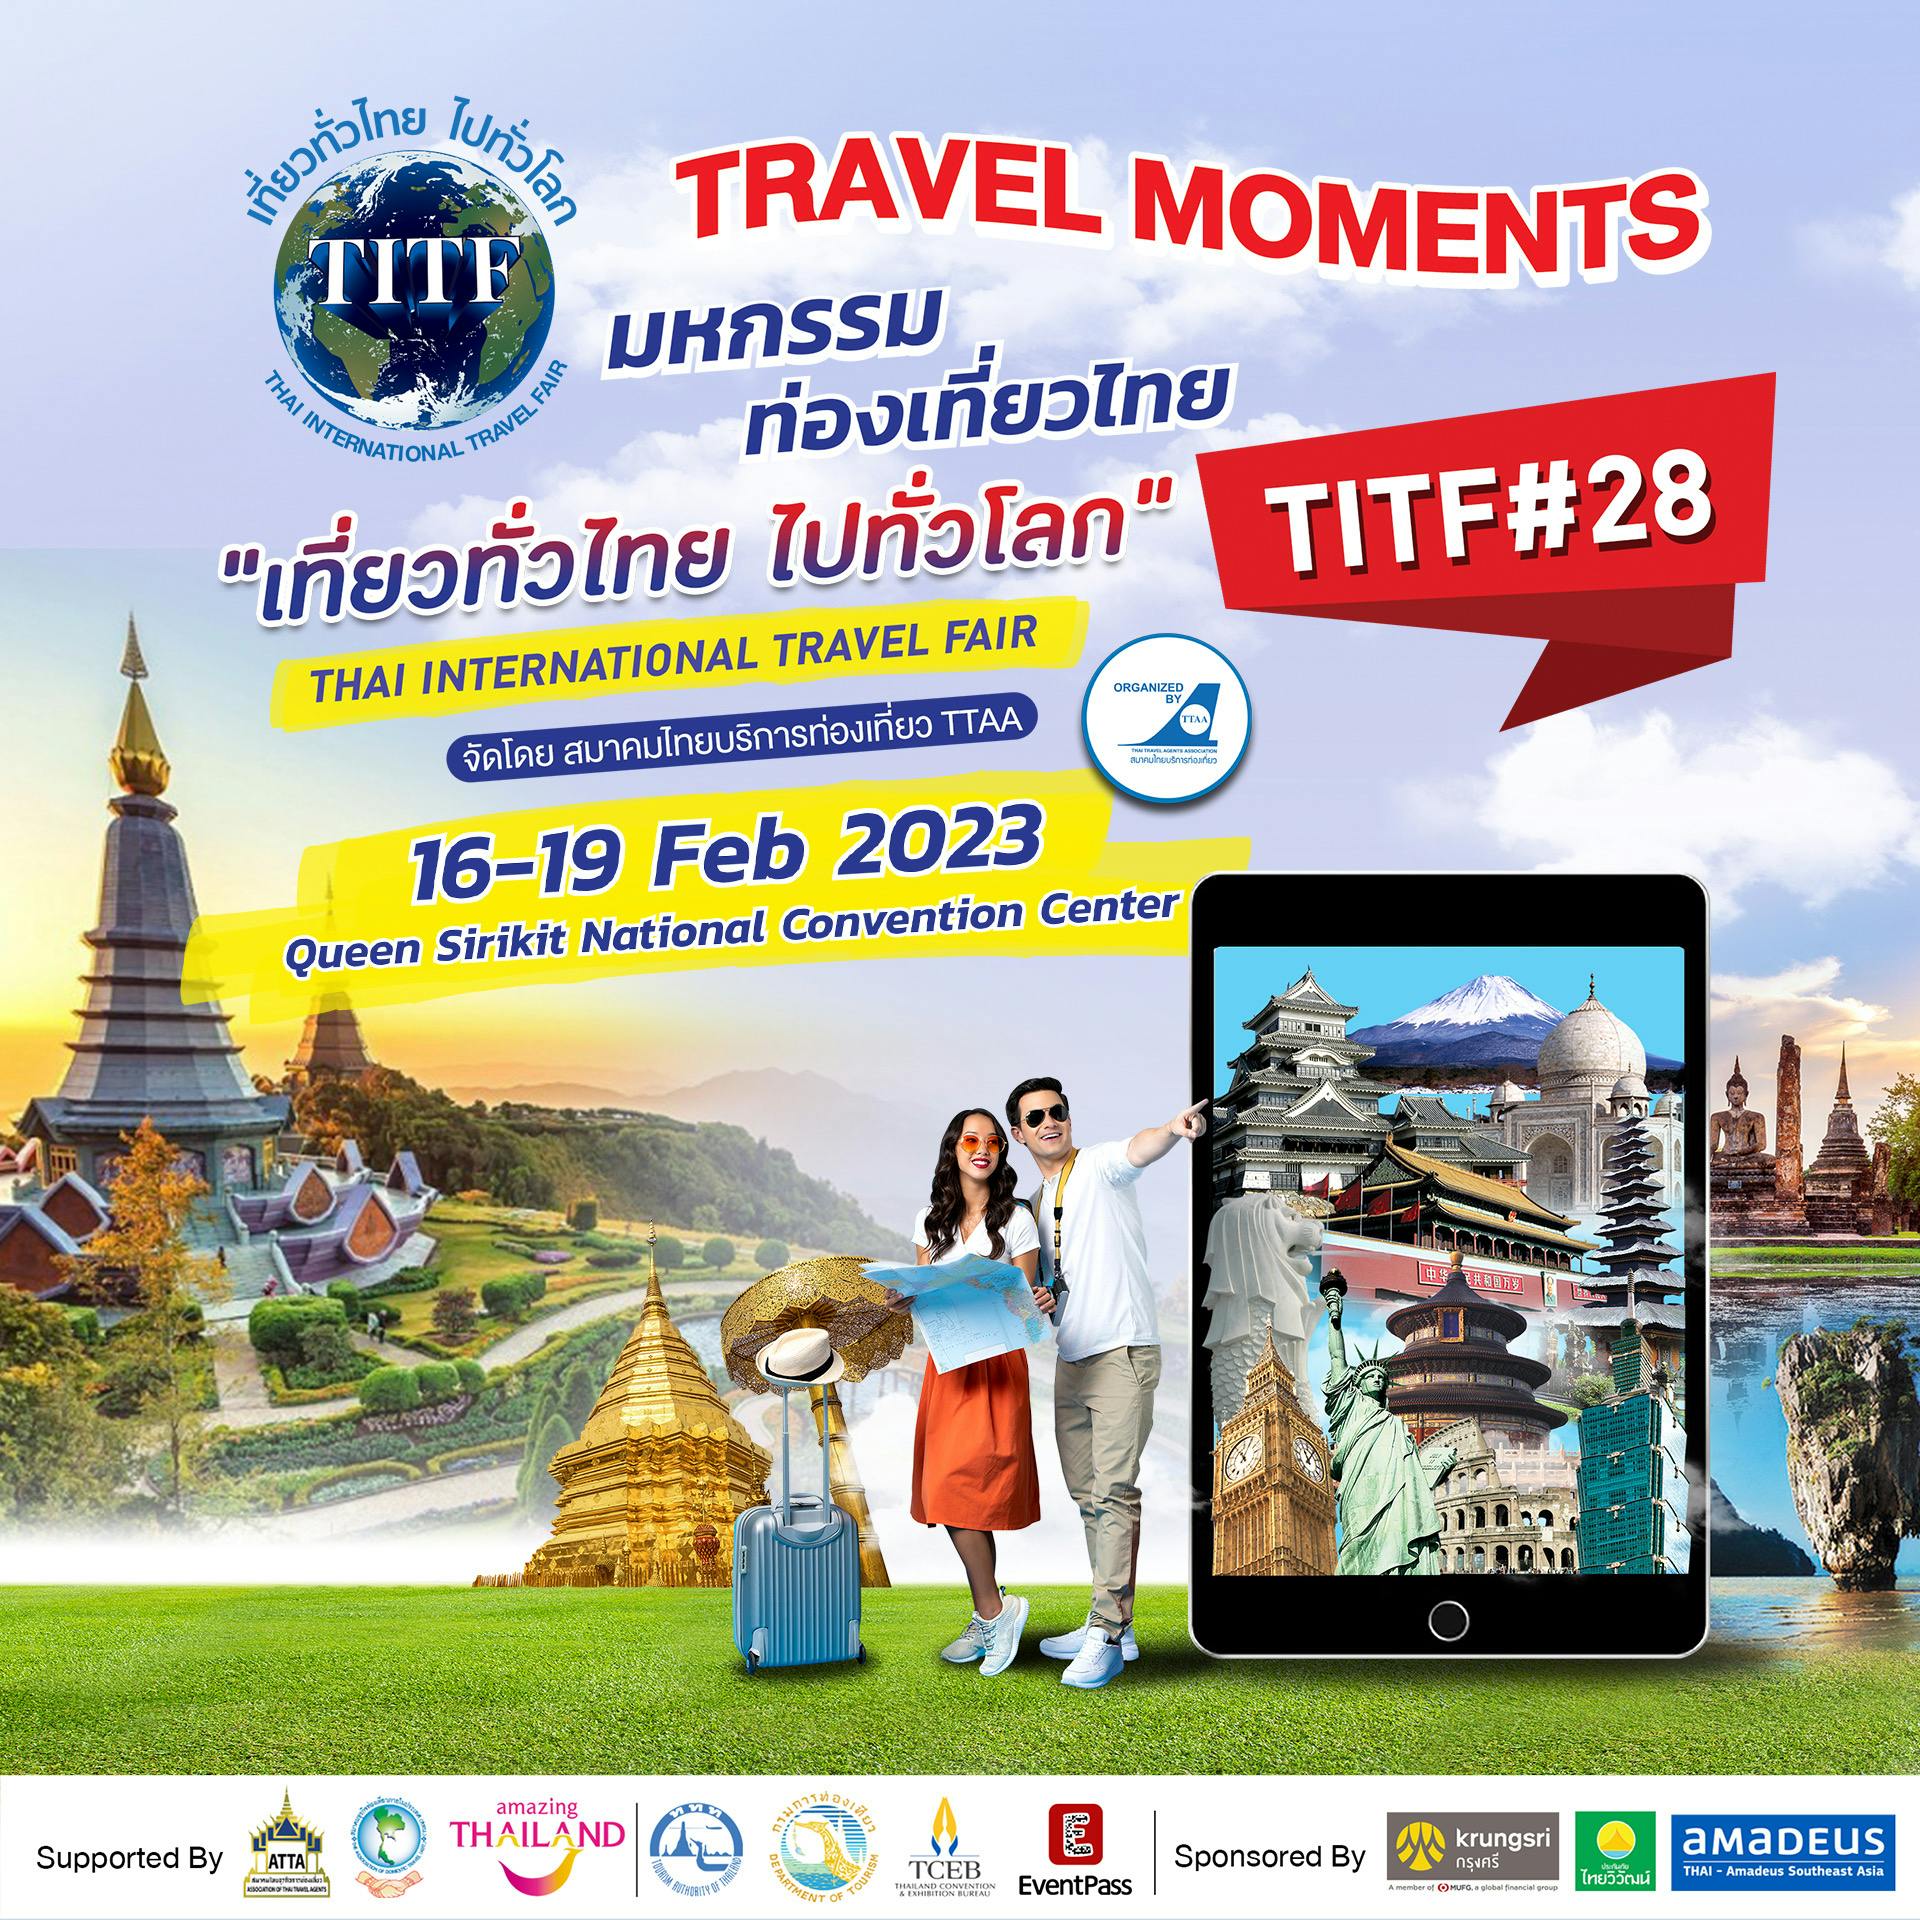 QSNCC Thai International Travel Fair 2023